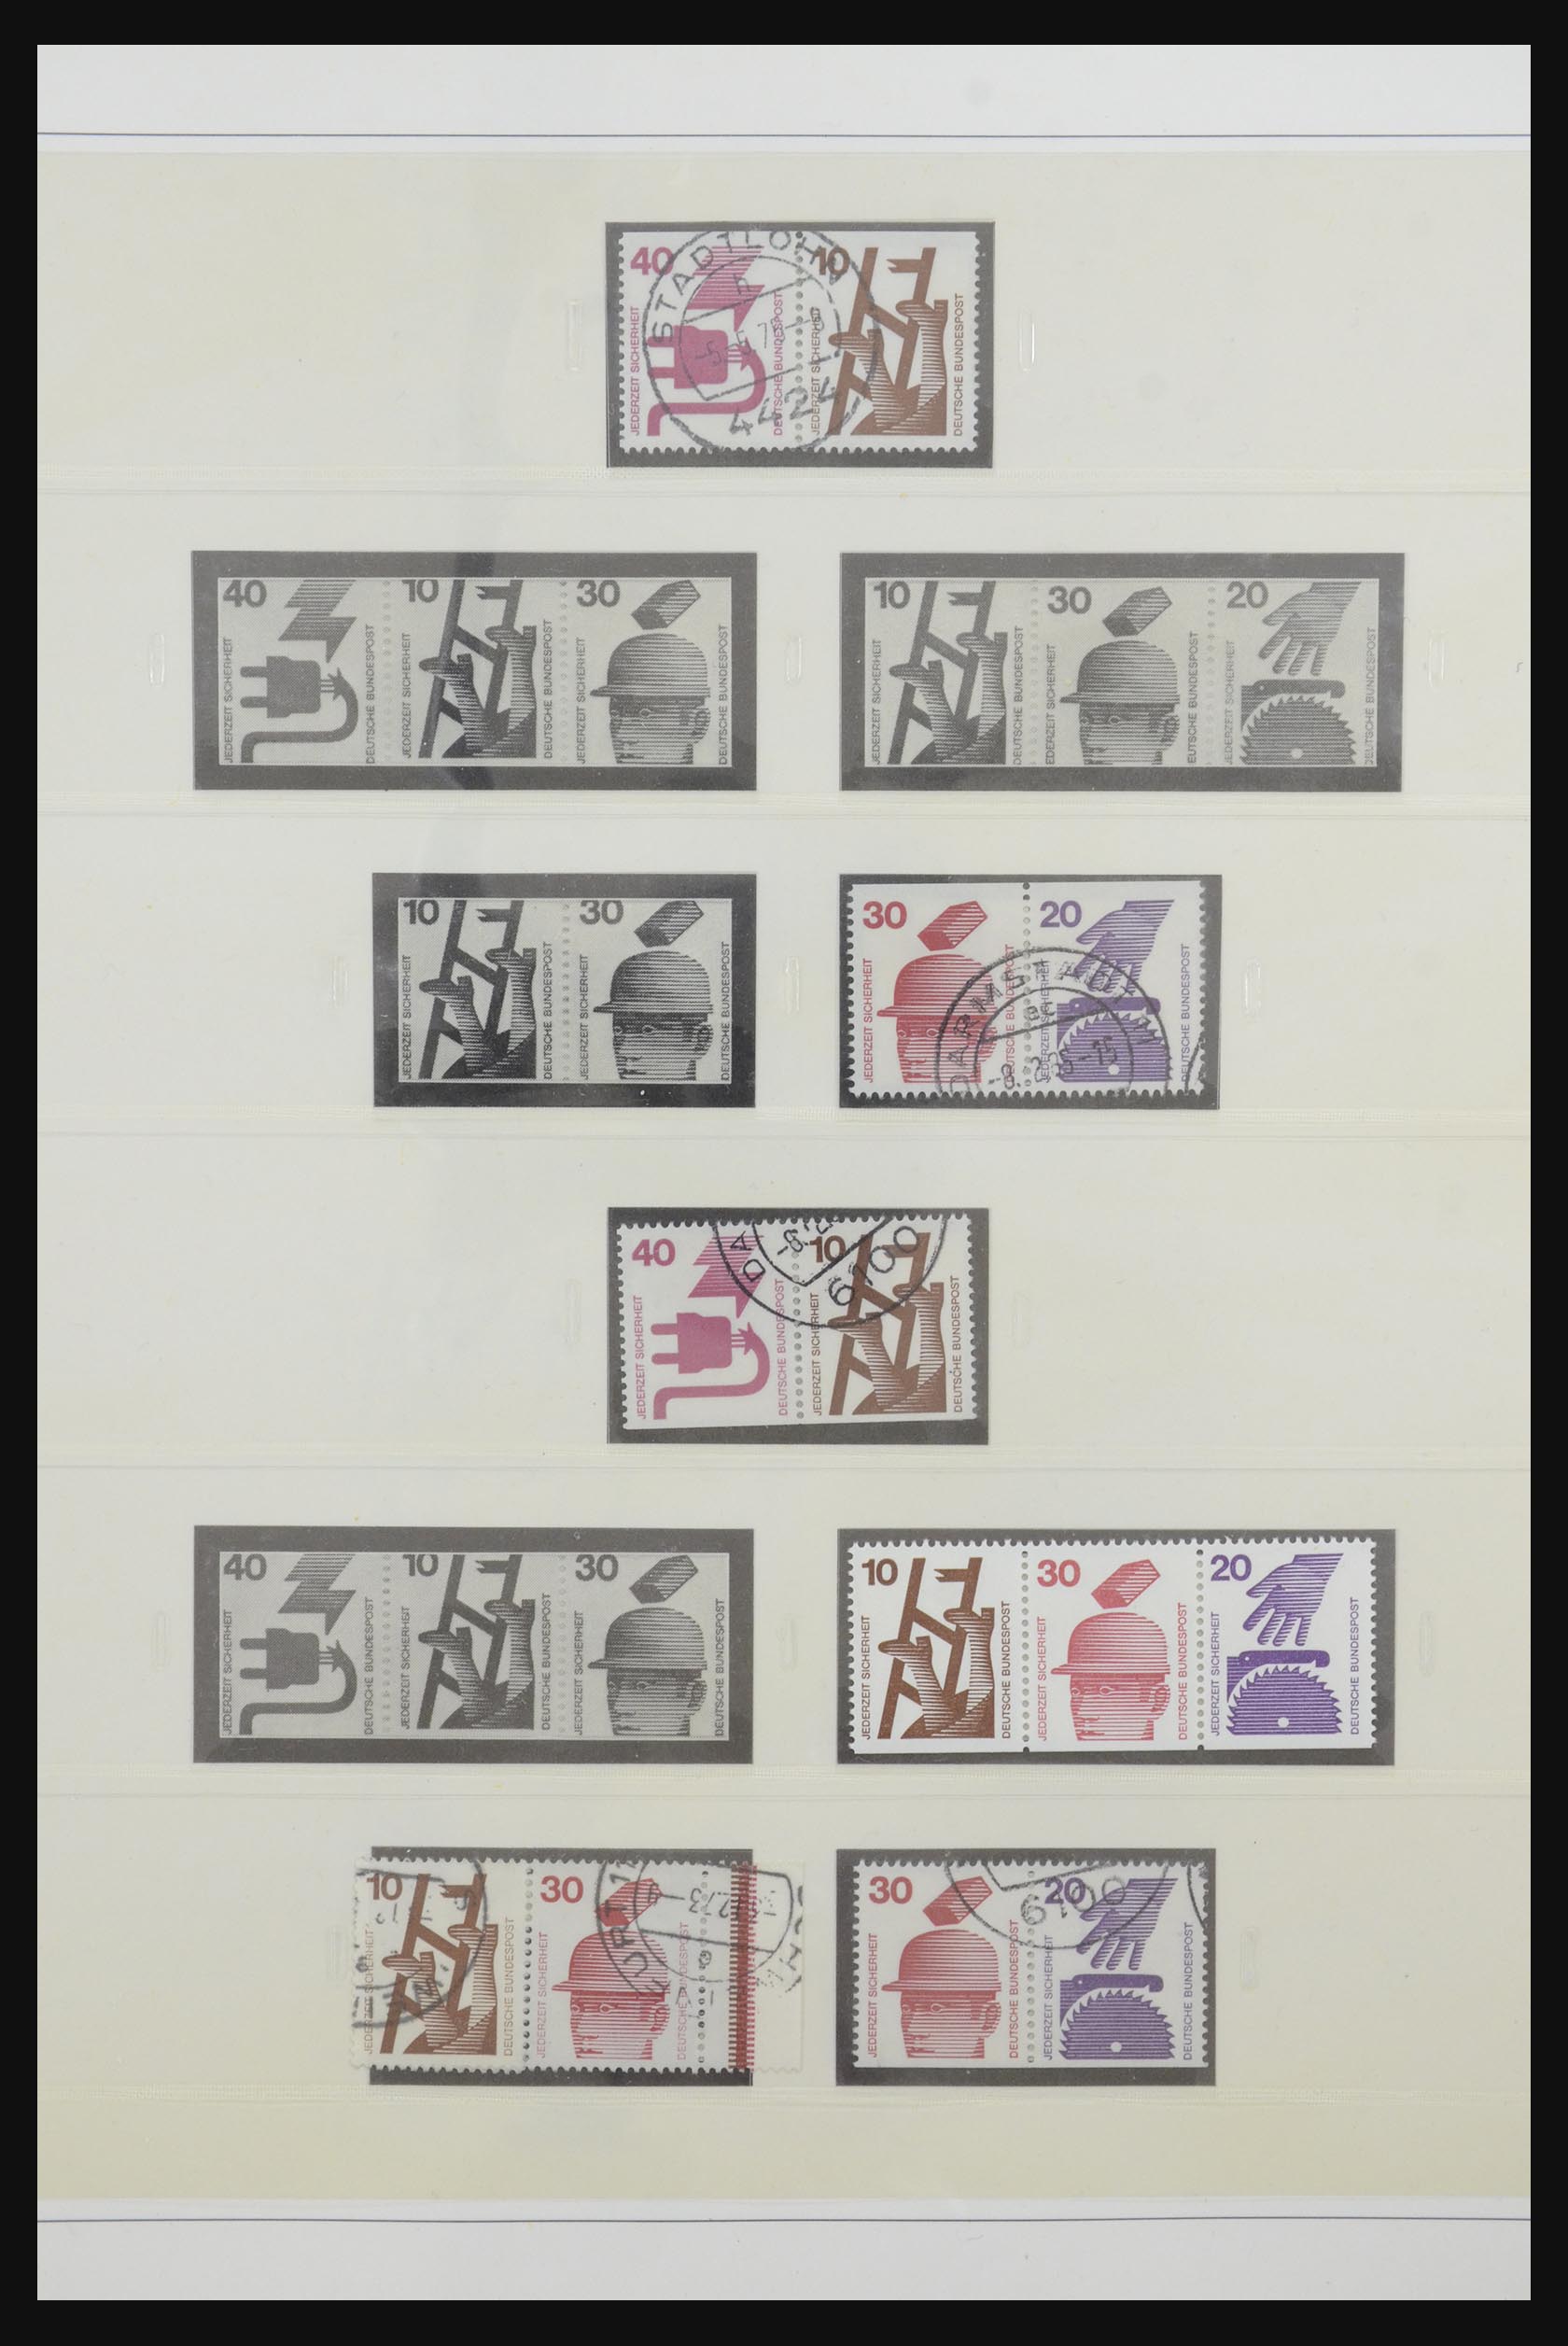 31842 051 - 31842 Bundespost combinaties 1951-2003.